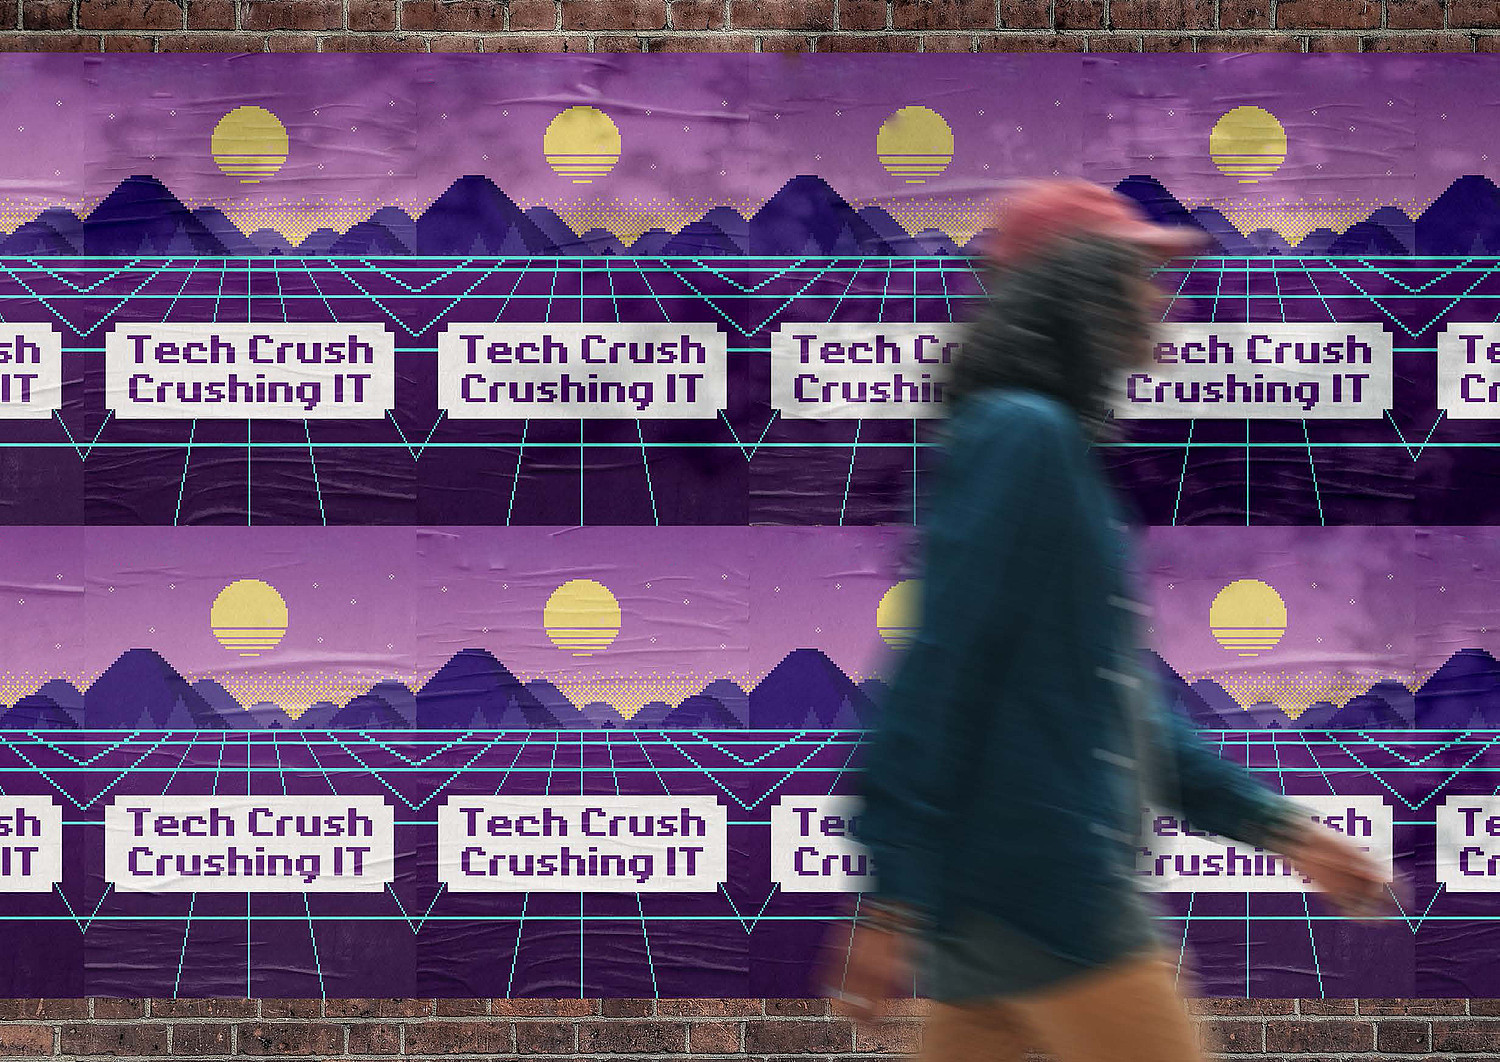 eine junge Frau geht vorbei an einer Wand voller Poster für TECH CRUSH